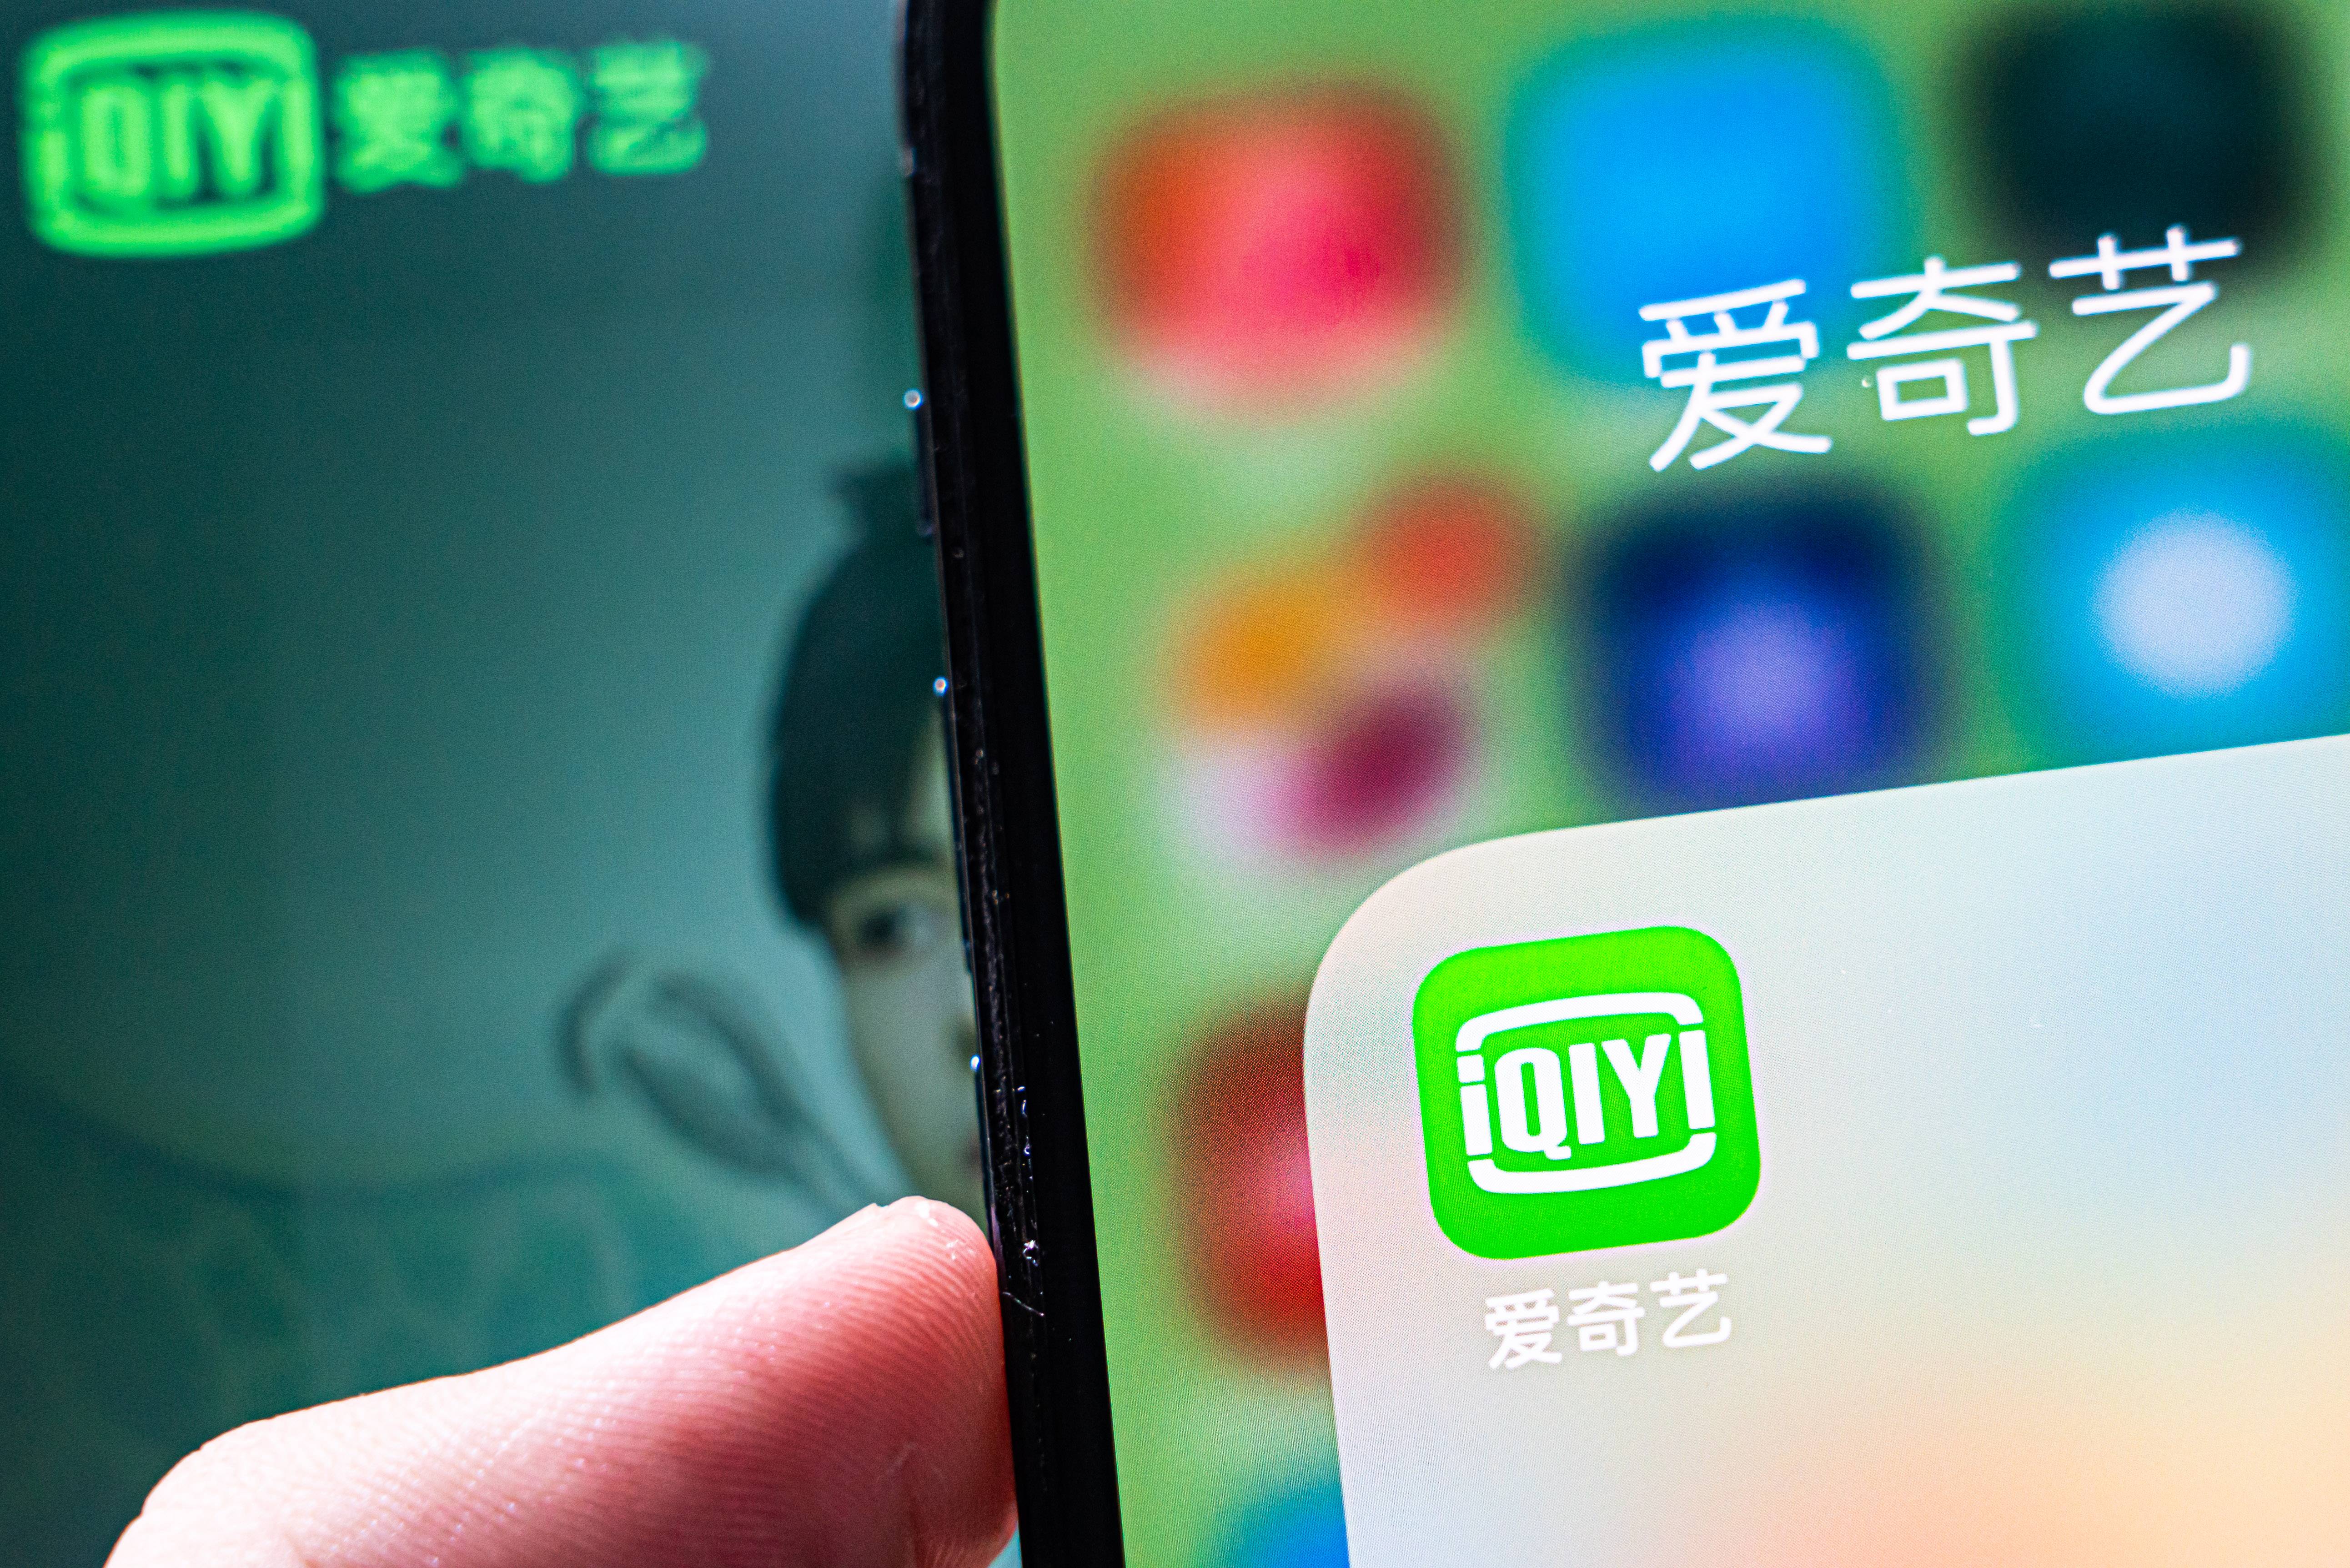 1669173138755 - Didi Chuxing riprende la registrazione di nuovi utenti / Apple potrebbe rilasciare nuovi prodotti questa settimana / iQiyi risponde al divieto di riproduzione della connessione HDMI